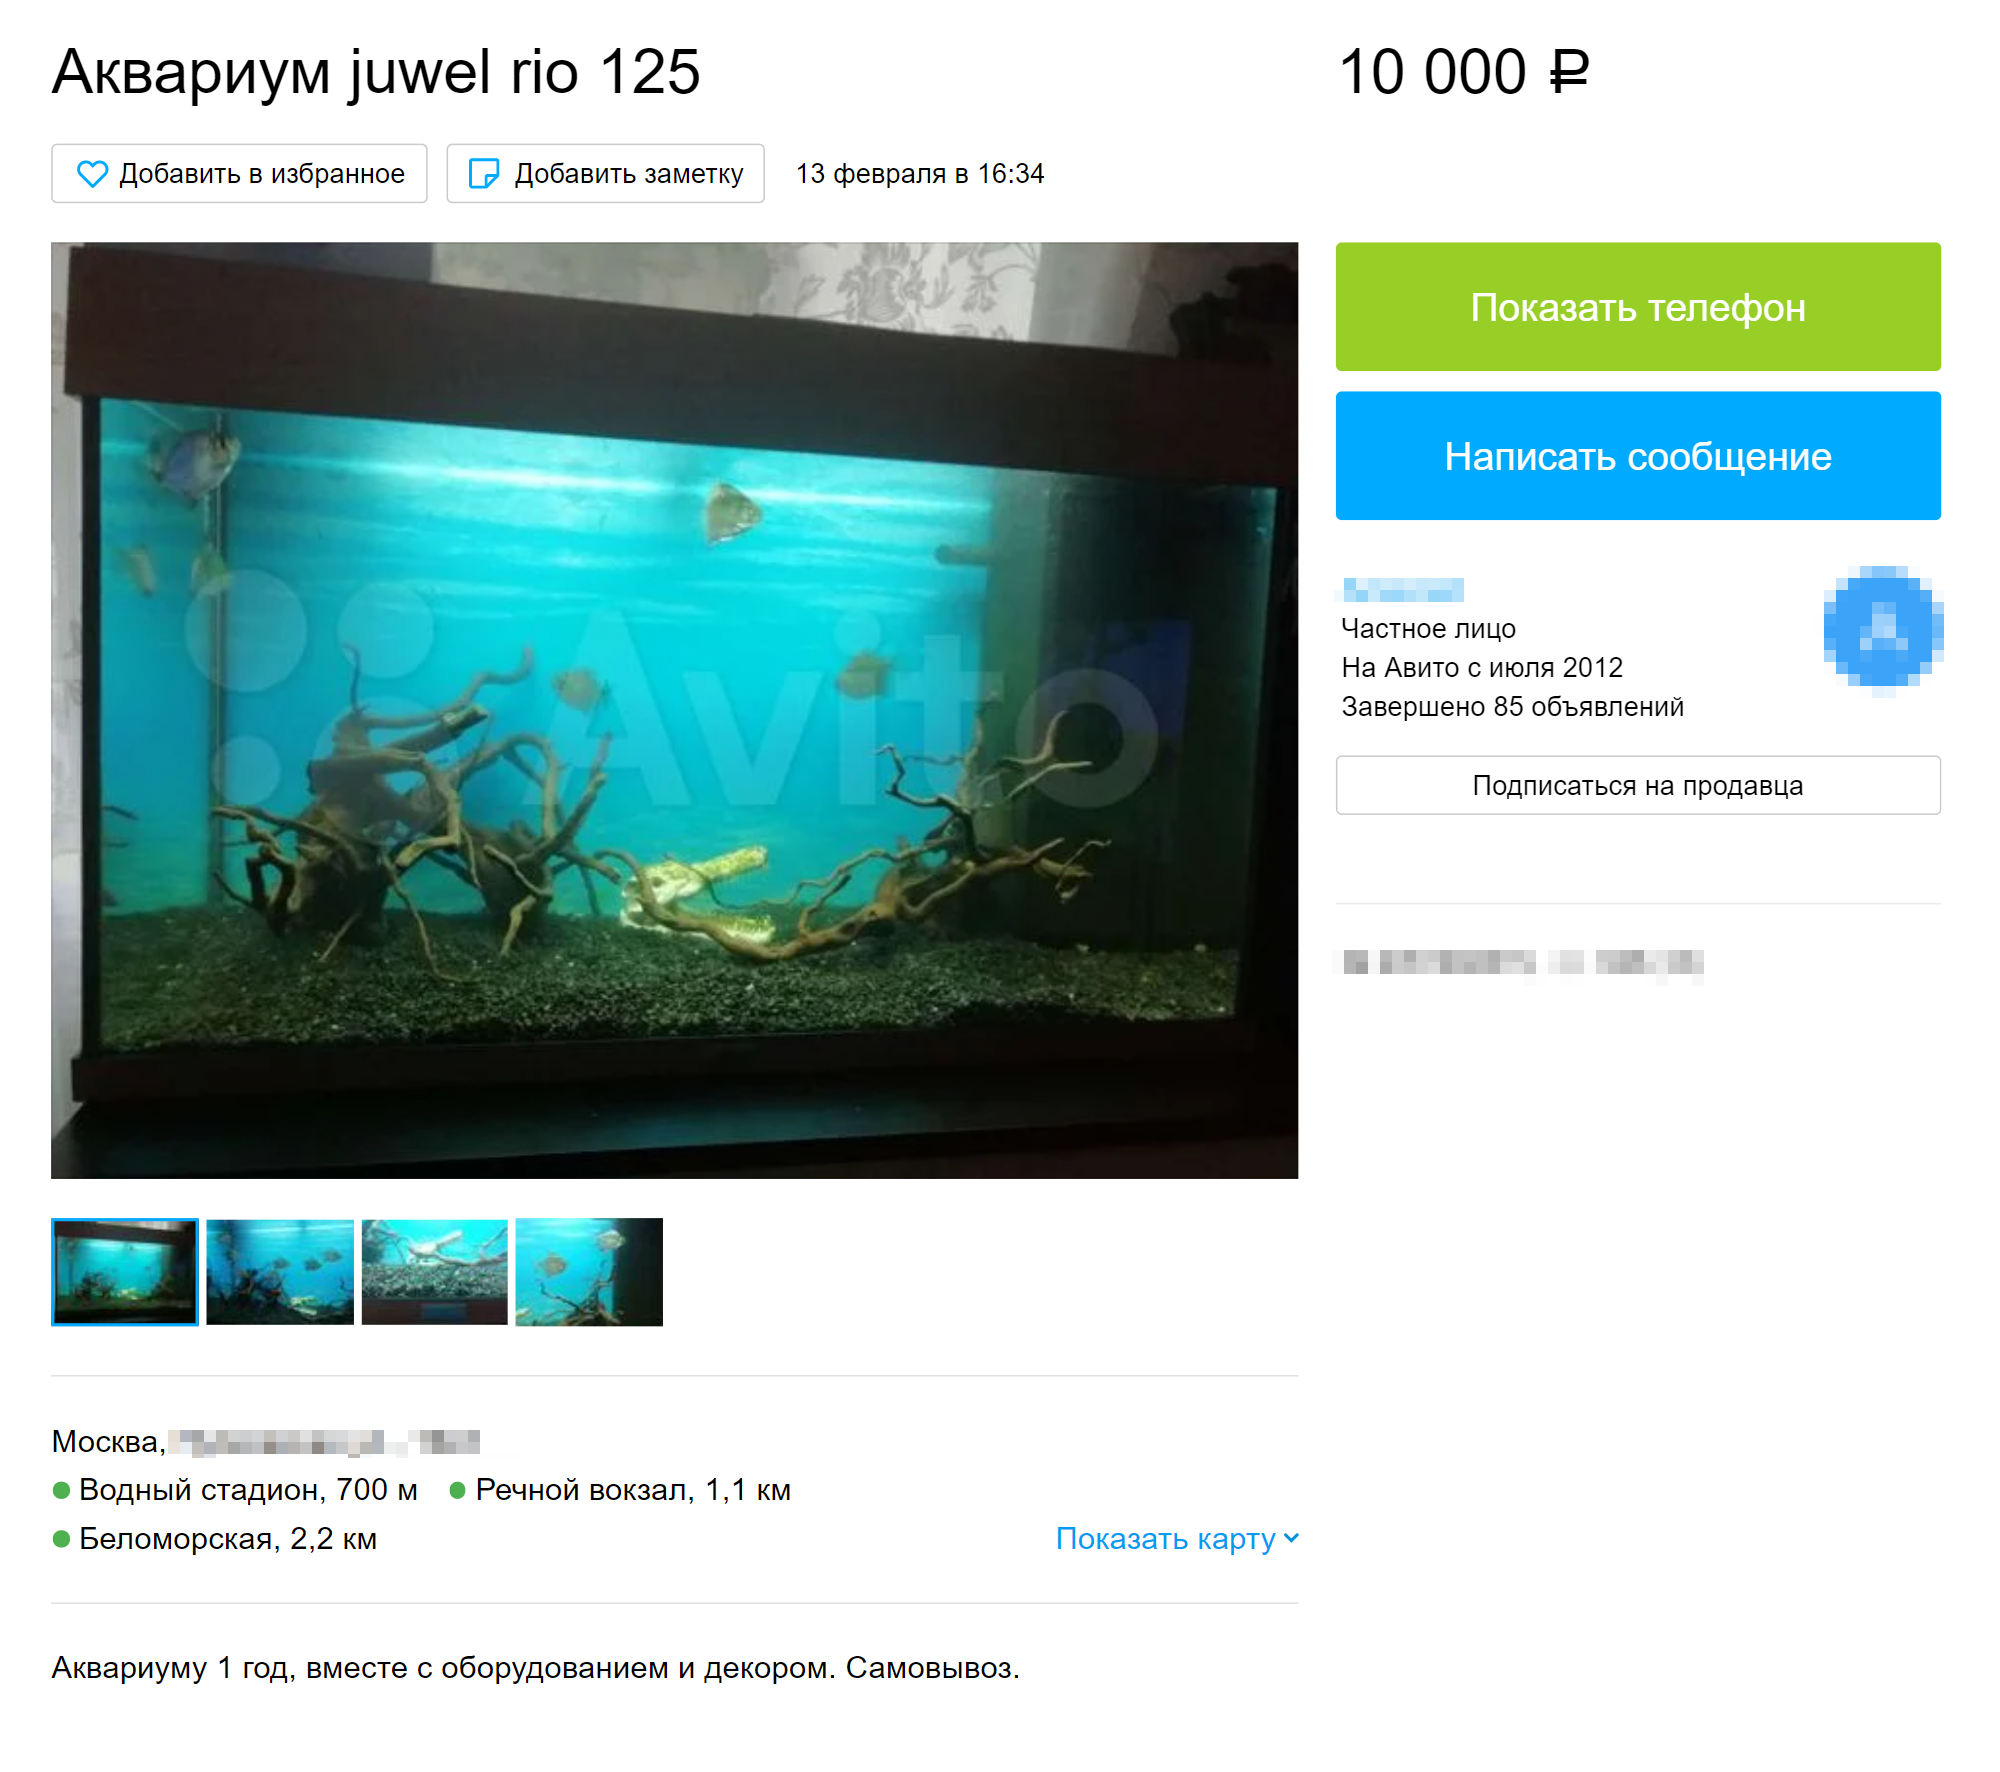 К аквариумам есть приятные дополнения, но лучше ориентироваться на состояние самого аквариума. Источник: avito.ru